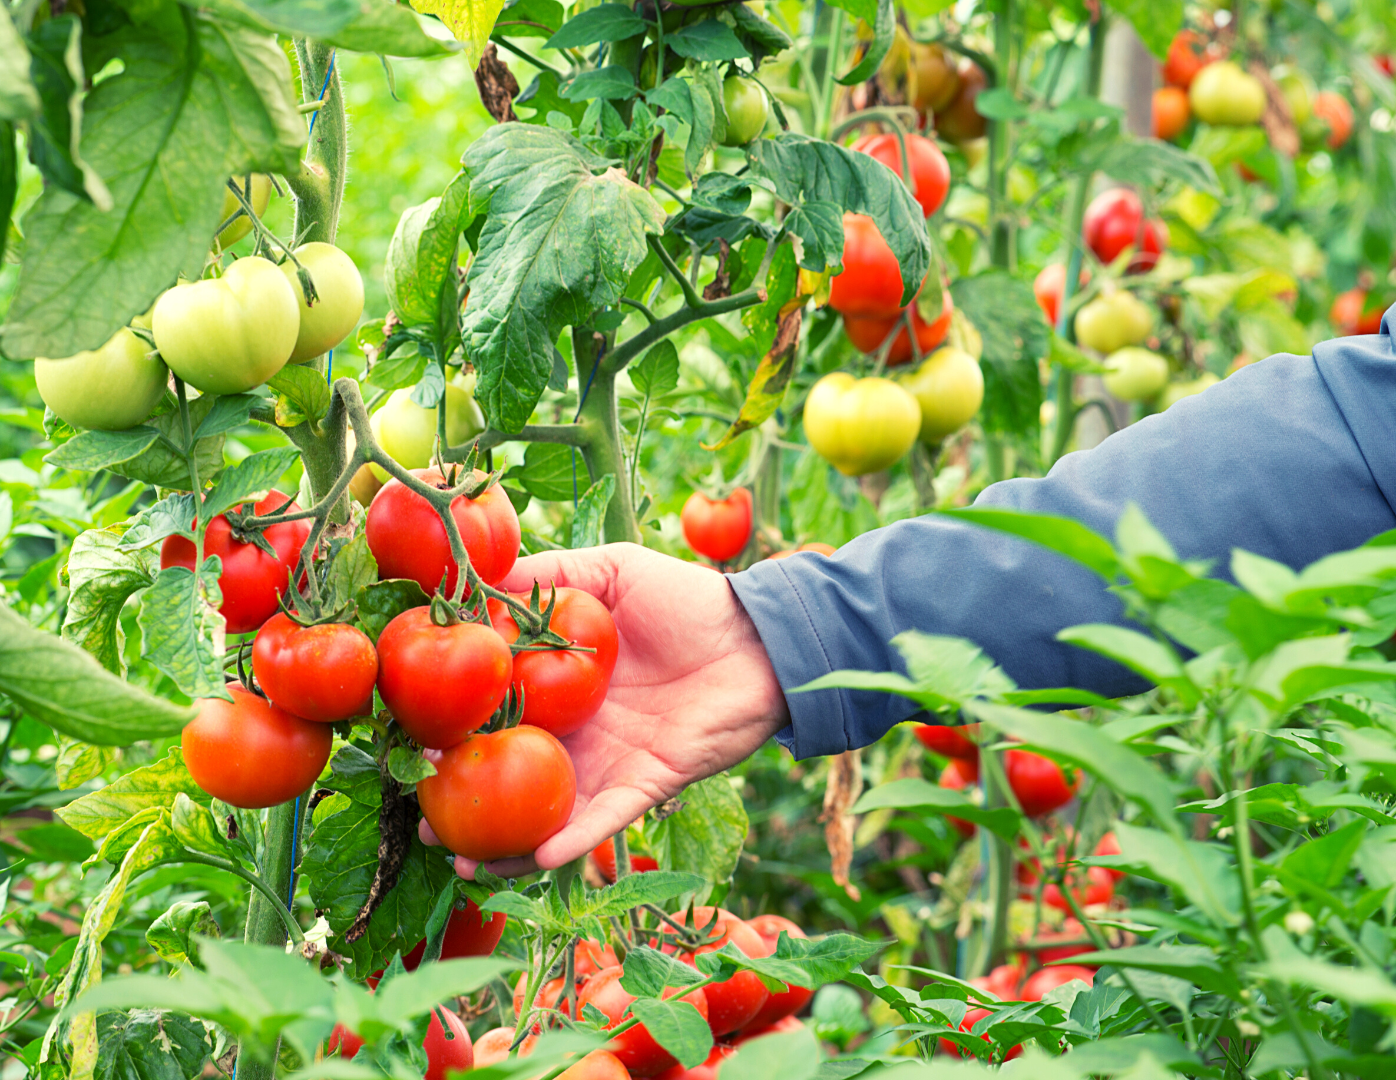 Tomates sous serre agrivoltaïque - pour illustrer objectifs agronomiques